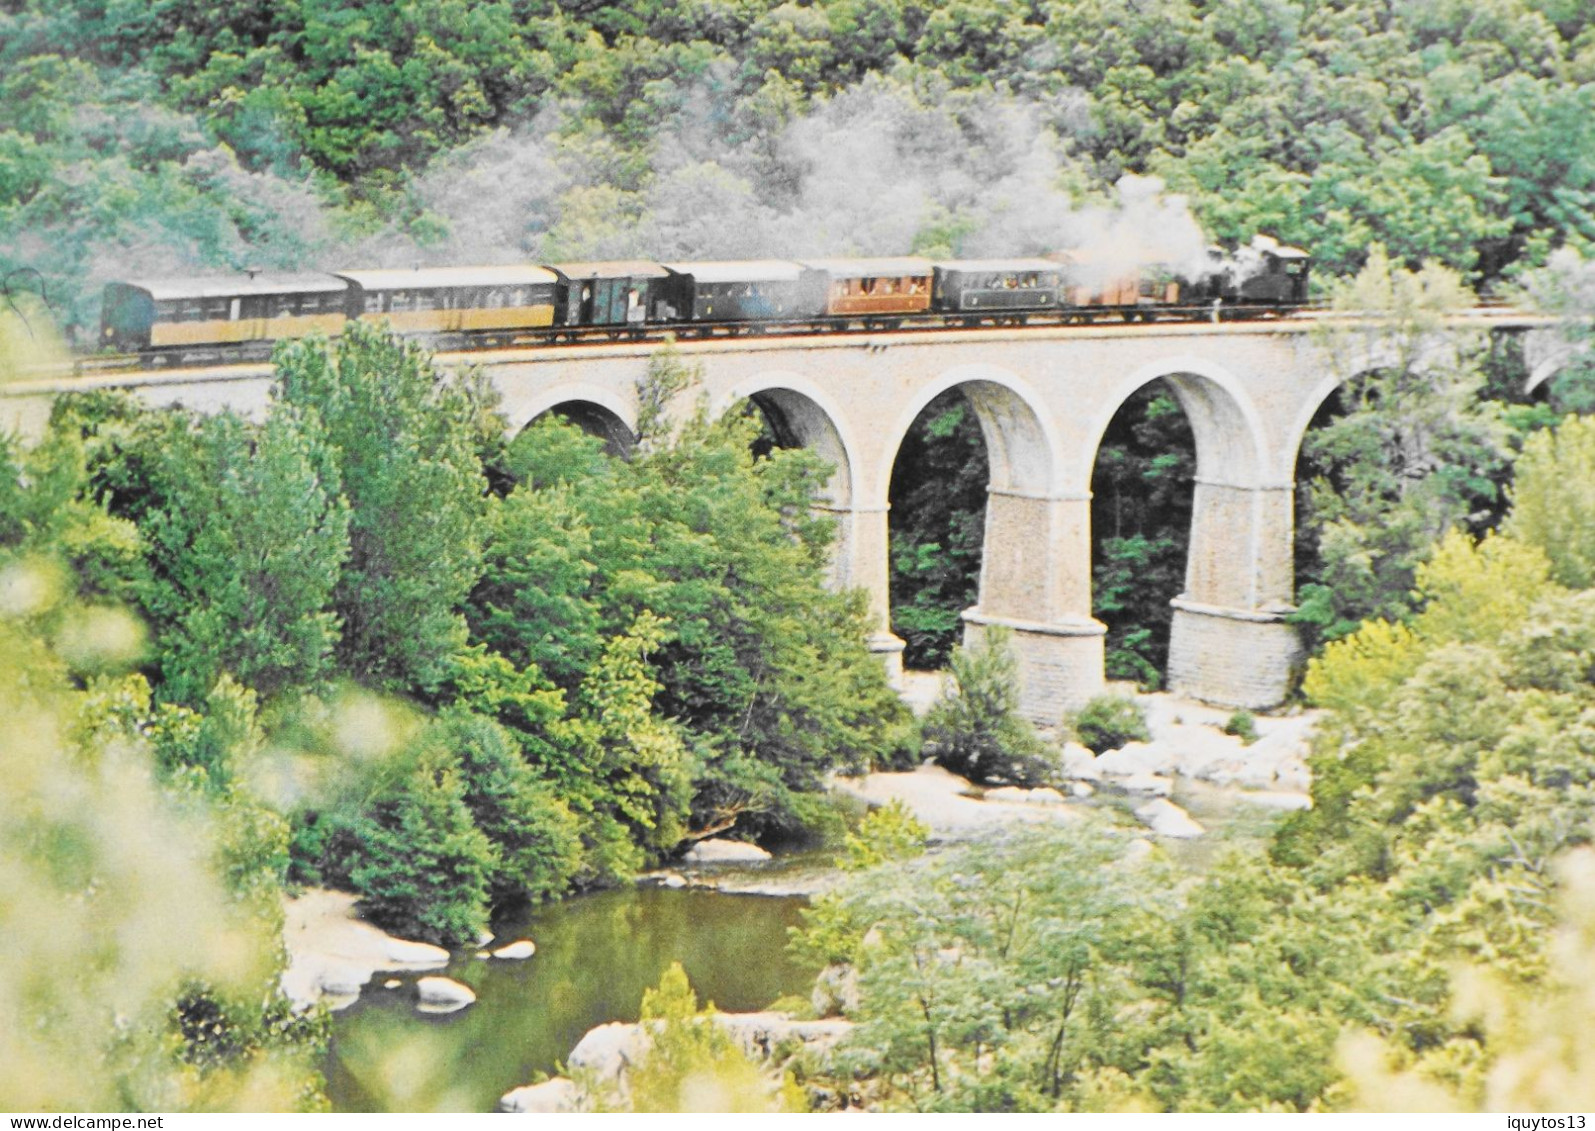 CPM - [30] Gard > Anduze > Trains à Vapeur Des Cévennes - Viaduc De Mialet - TBE - Anduze